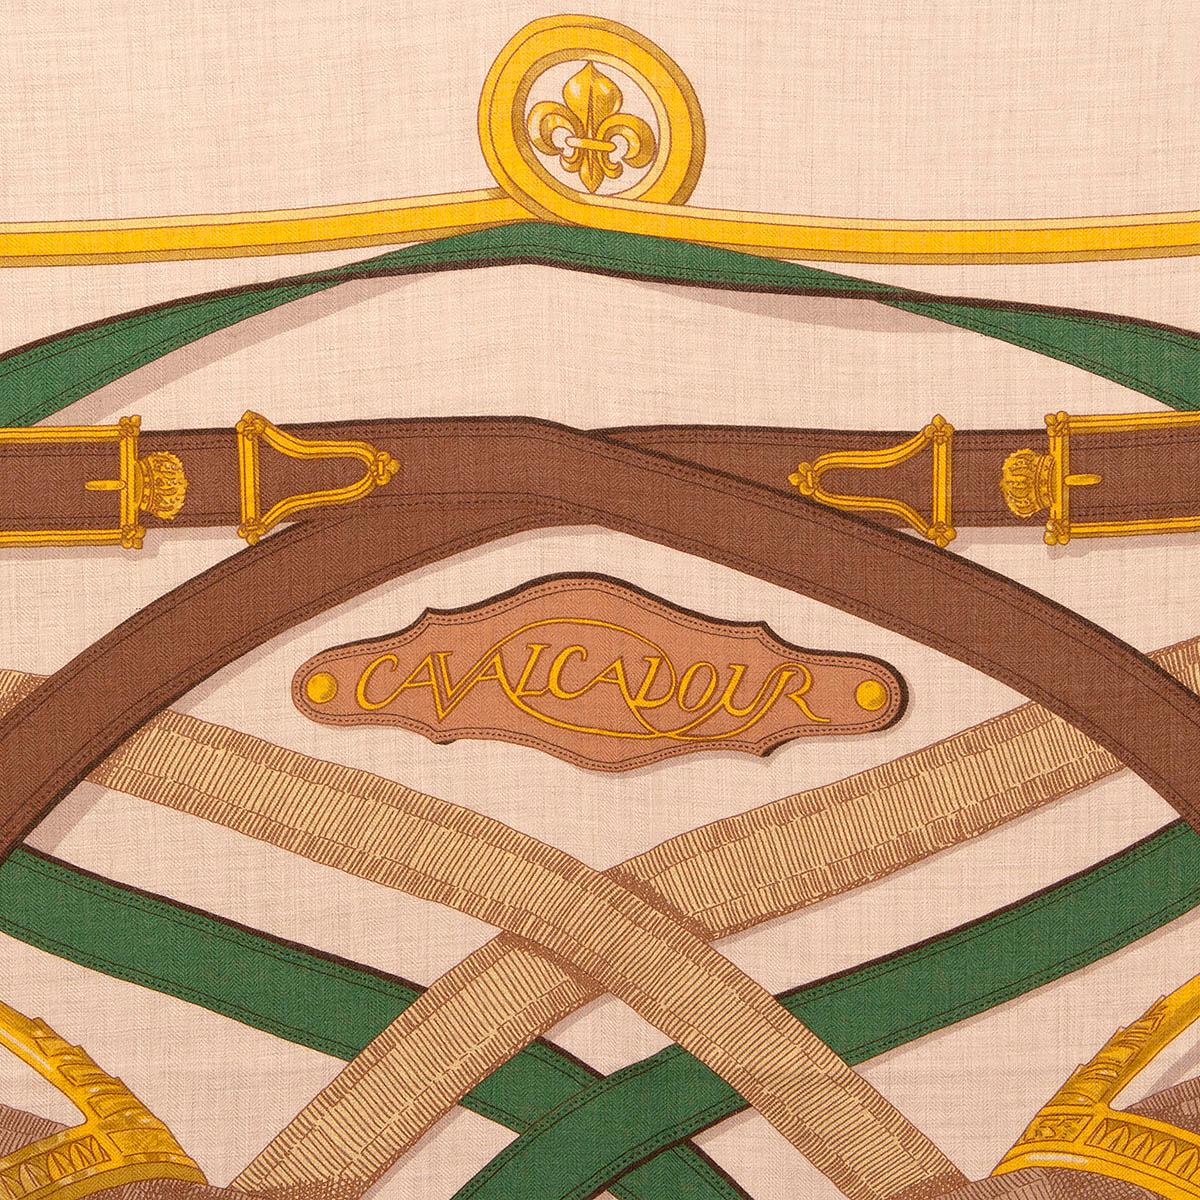 Châle 'Cavalcadour 140' 100% authentique Hermès par Henri d'Origny en cachemire ivoire (65%) et soie (35%) avec détails jaune, marron, vert foncé et olive. A été porté et est en excellent état.

L'histoire derrière :

Cavalcadour est une joyeuse